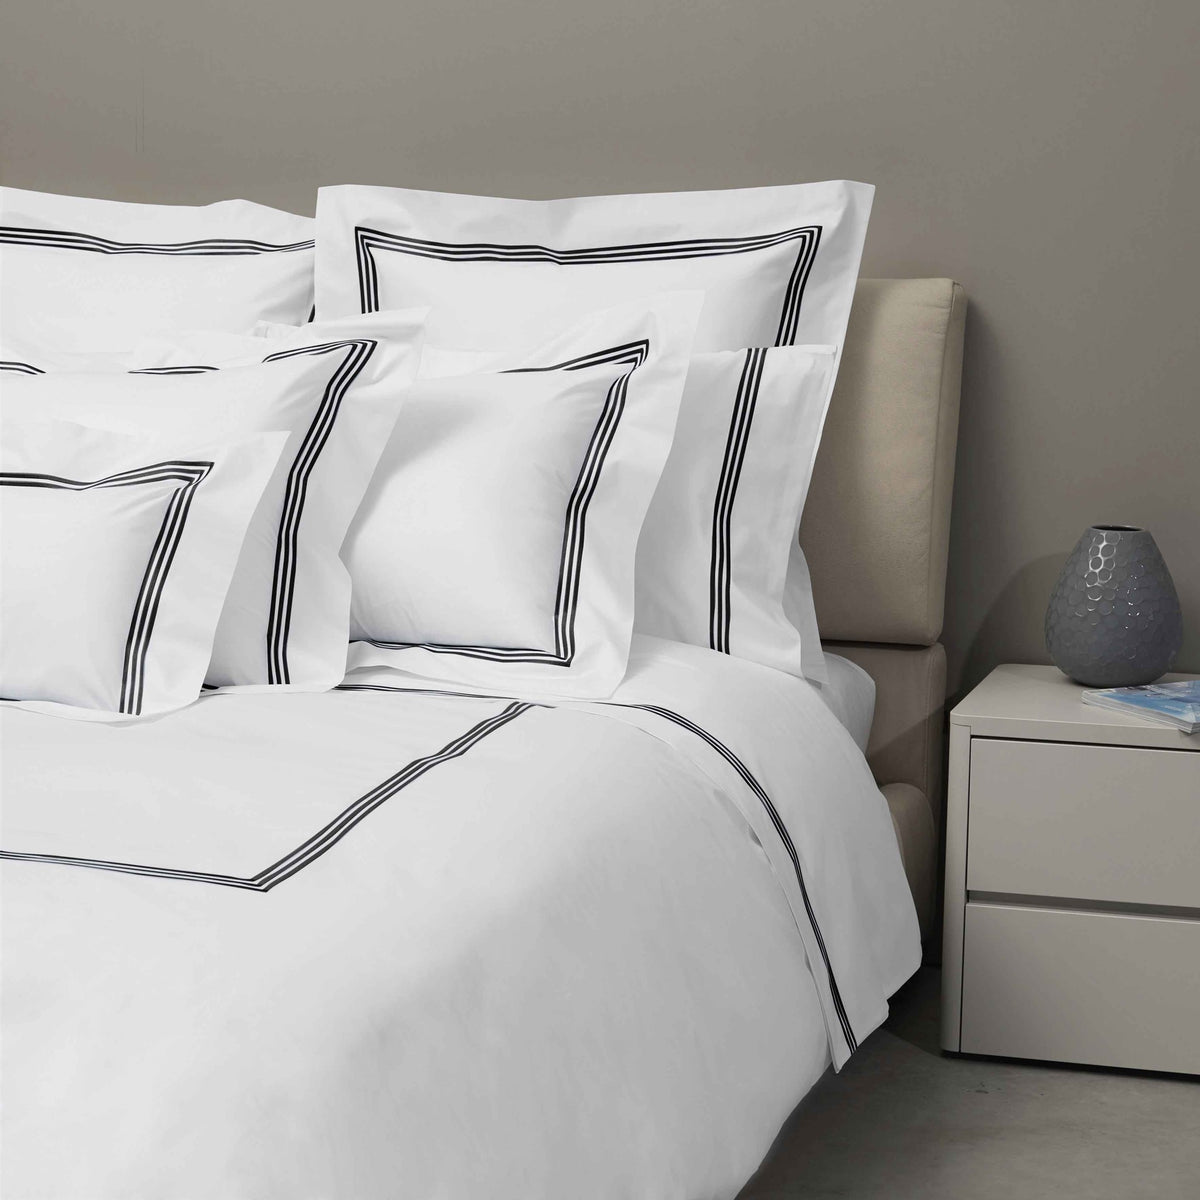 Bed Dressed in Signoria Platinum Percale Bedding in White/Black Color